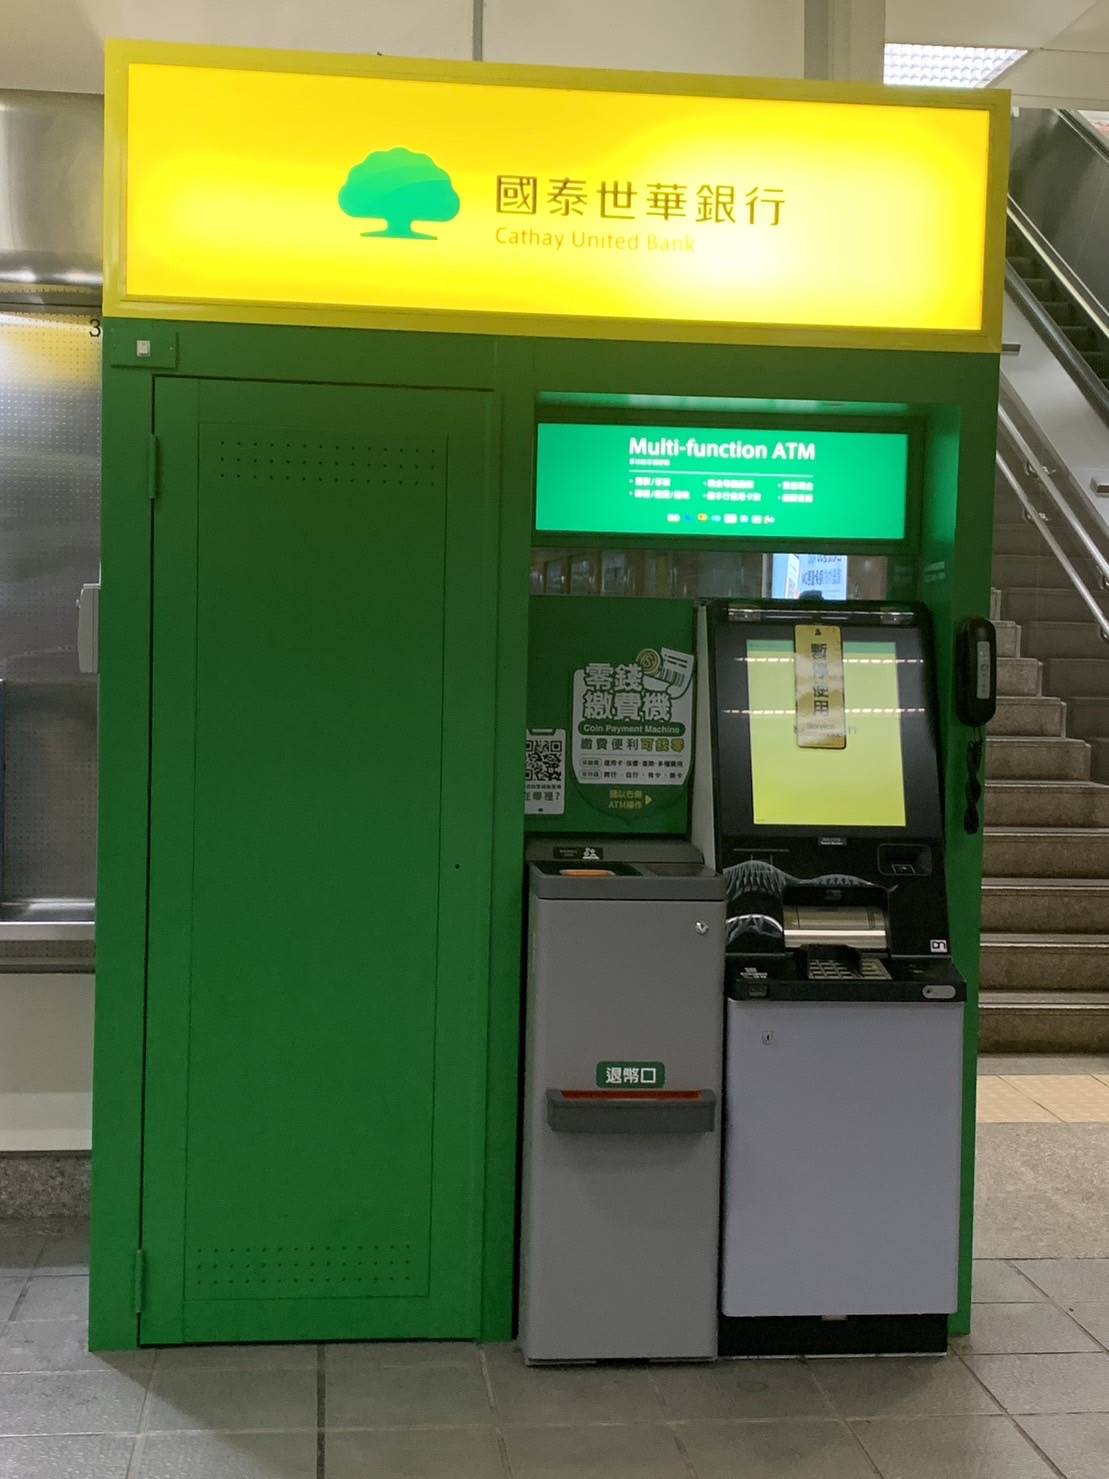 位於台北捷運站內的國泰世華ATM發生異常。